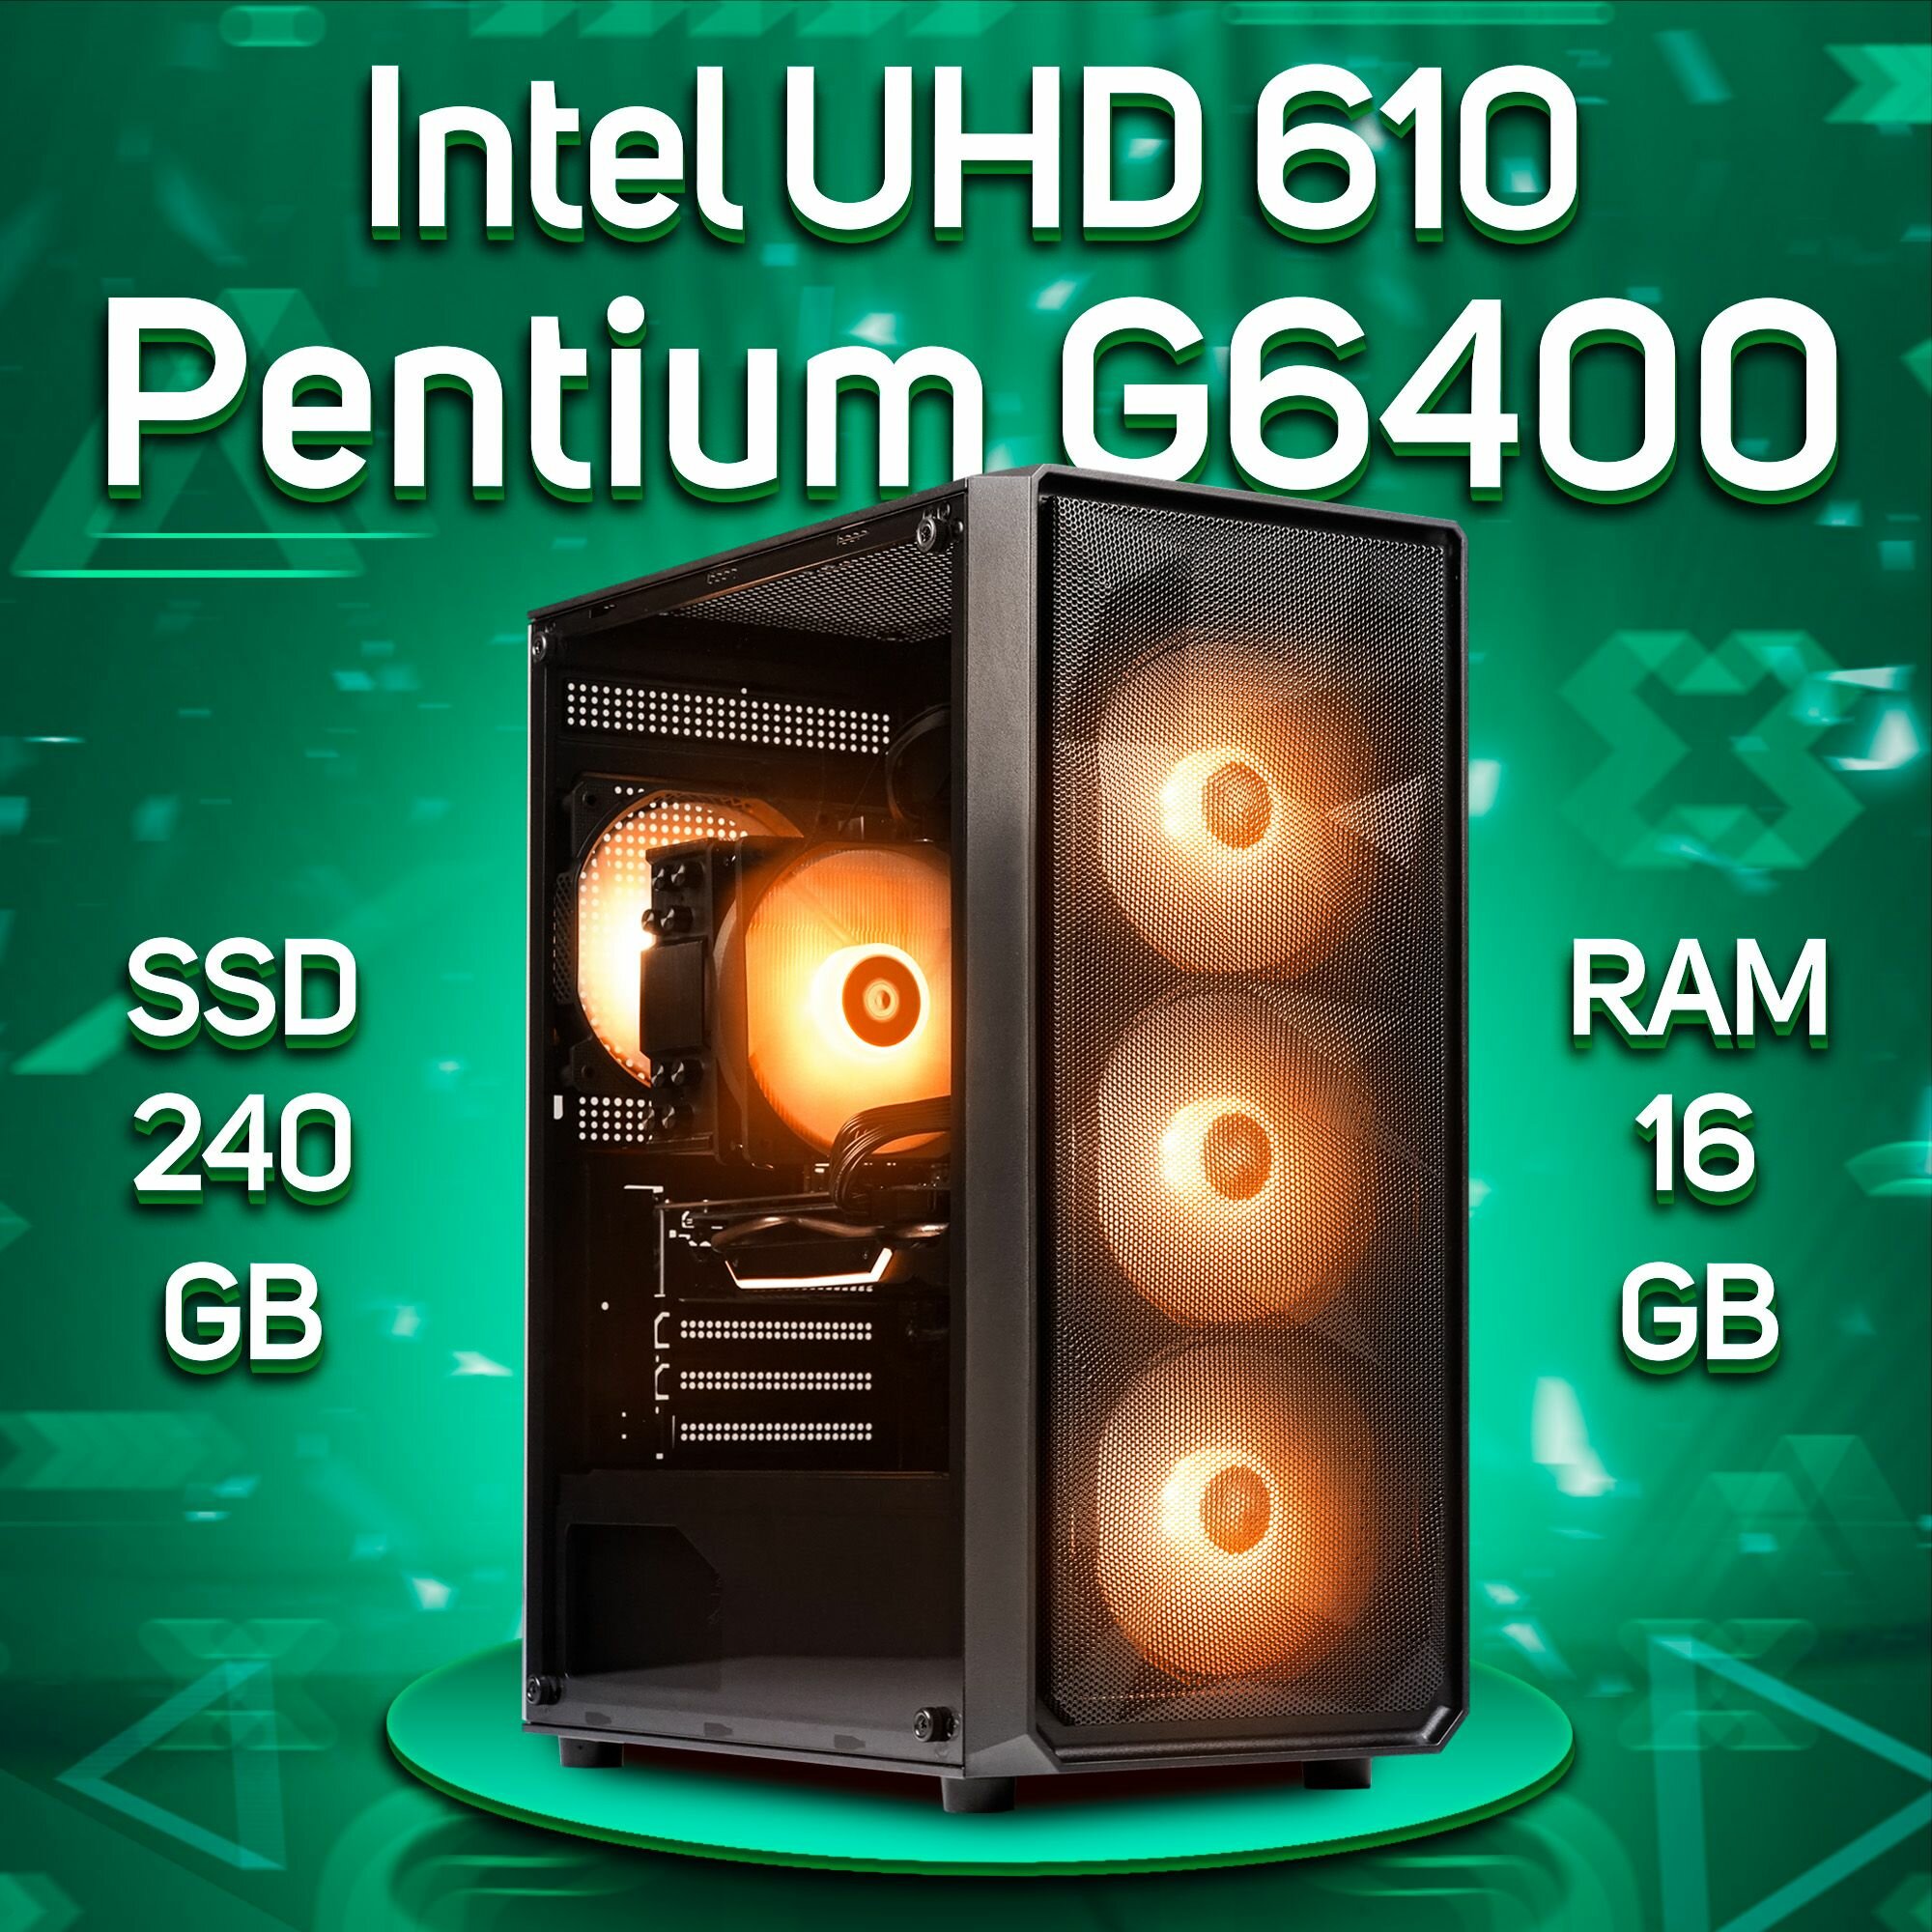 Компьютер Intel Pentium G6400 / Intel UHD Graphics 610, RAM 16GB, SSD 240GB